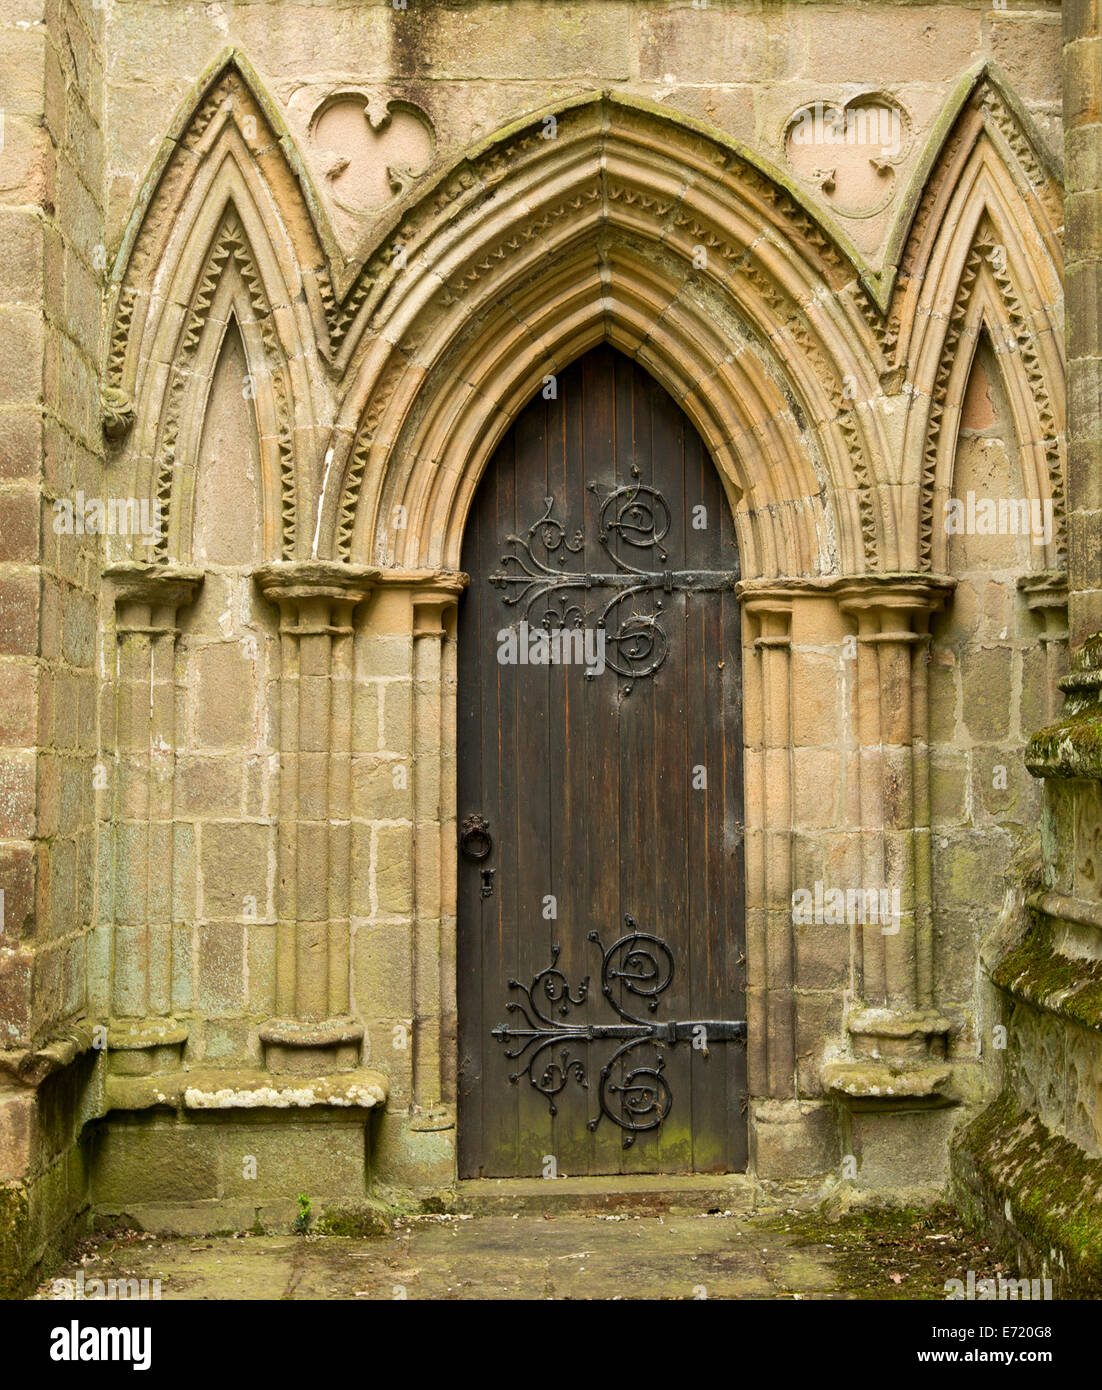 Holztür mit großen & spektakulär dekorative Scharniere umgeben von kunstvollen Steinbögen im historischen Bolton Priory-Kirche in England Stockfoto